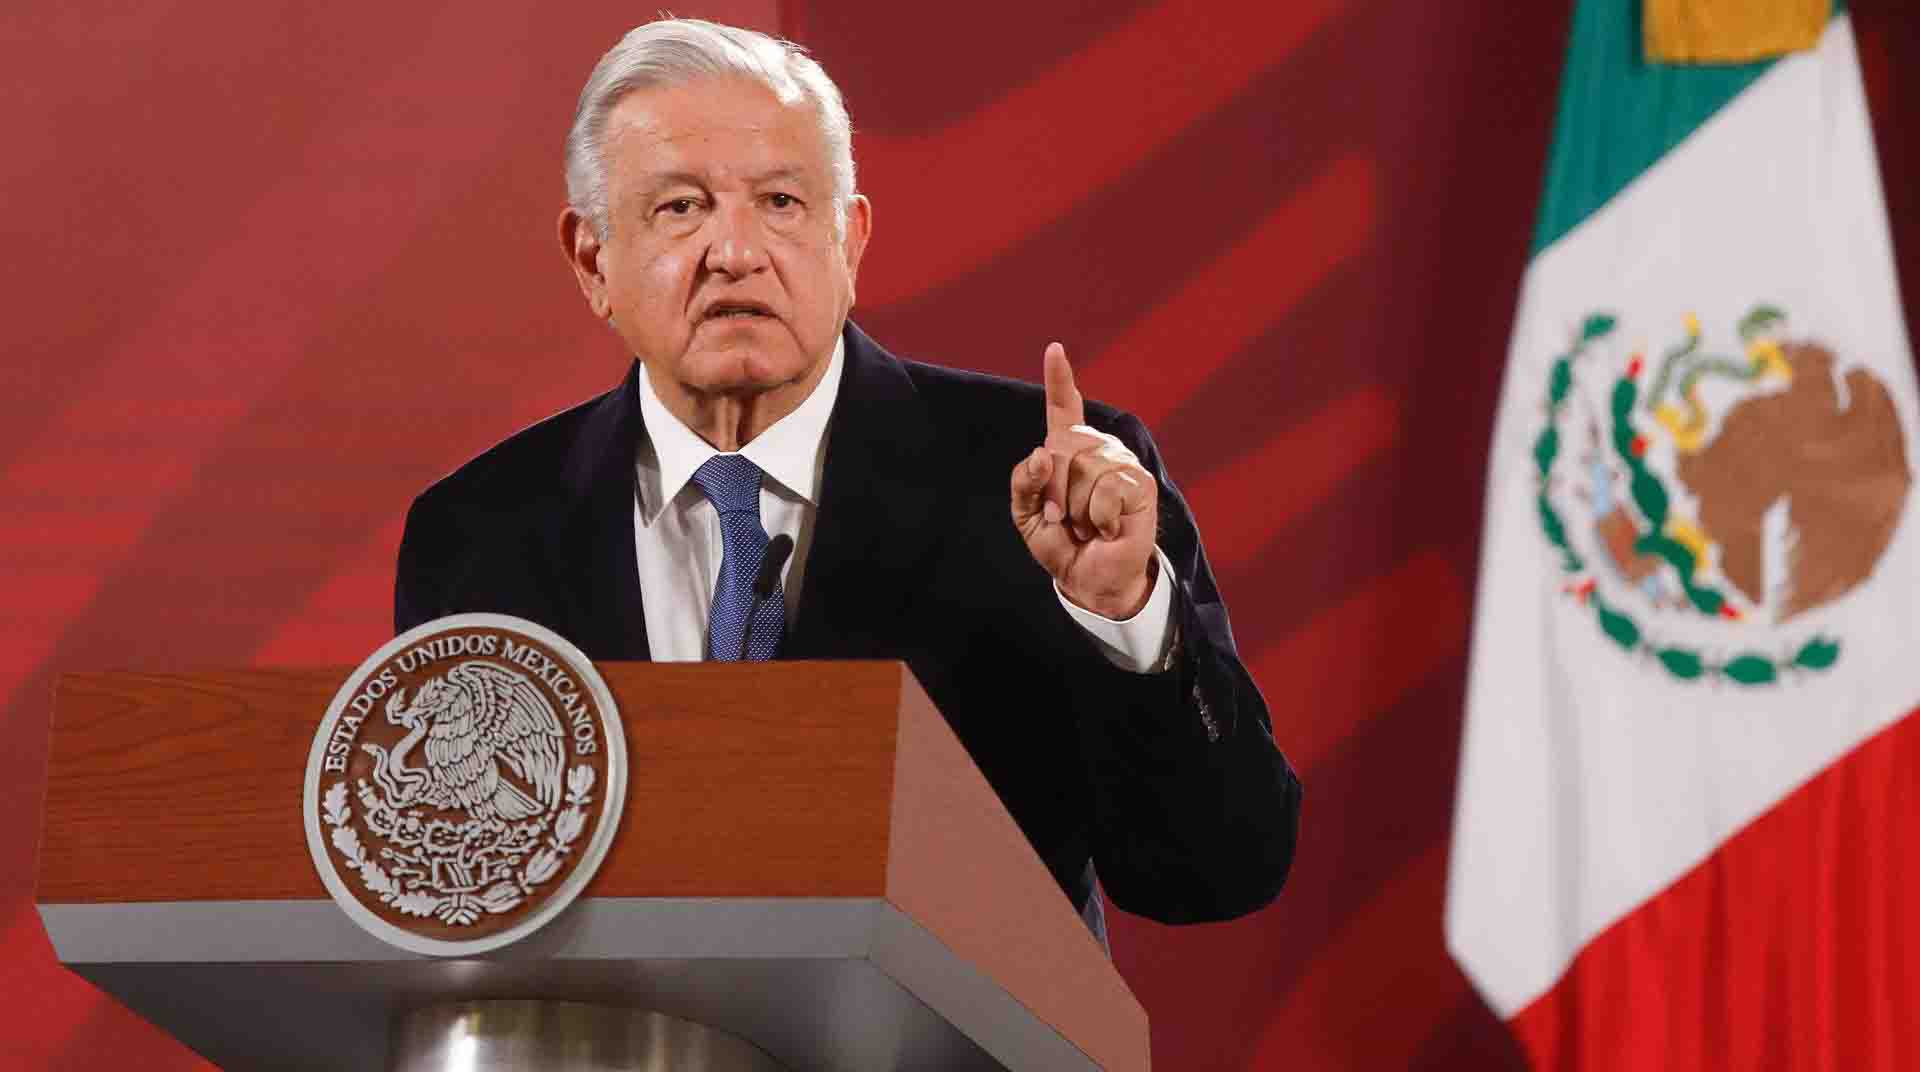 El presidente de México, Andrés Manuel López Obrador, confirmó que no asiste a la Cumbre de las Américas debido a que no fueron invitados todos los países. Foto: EFE.